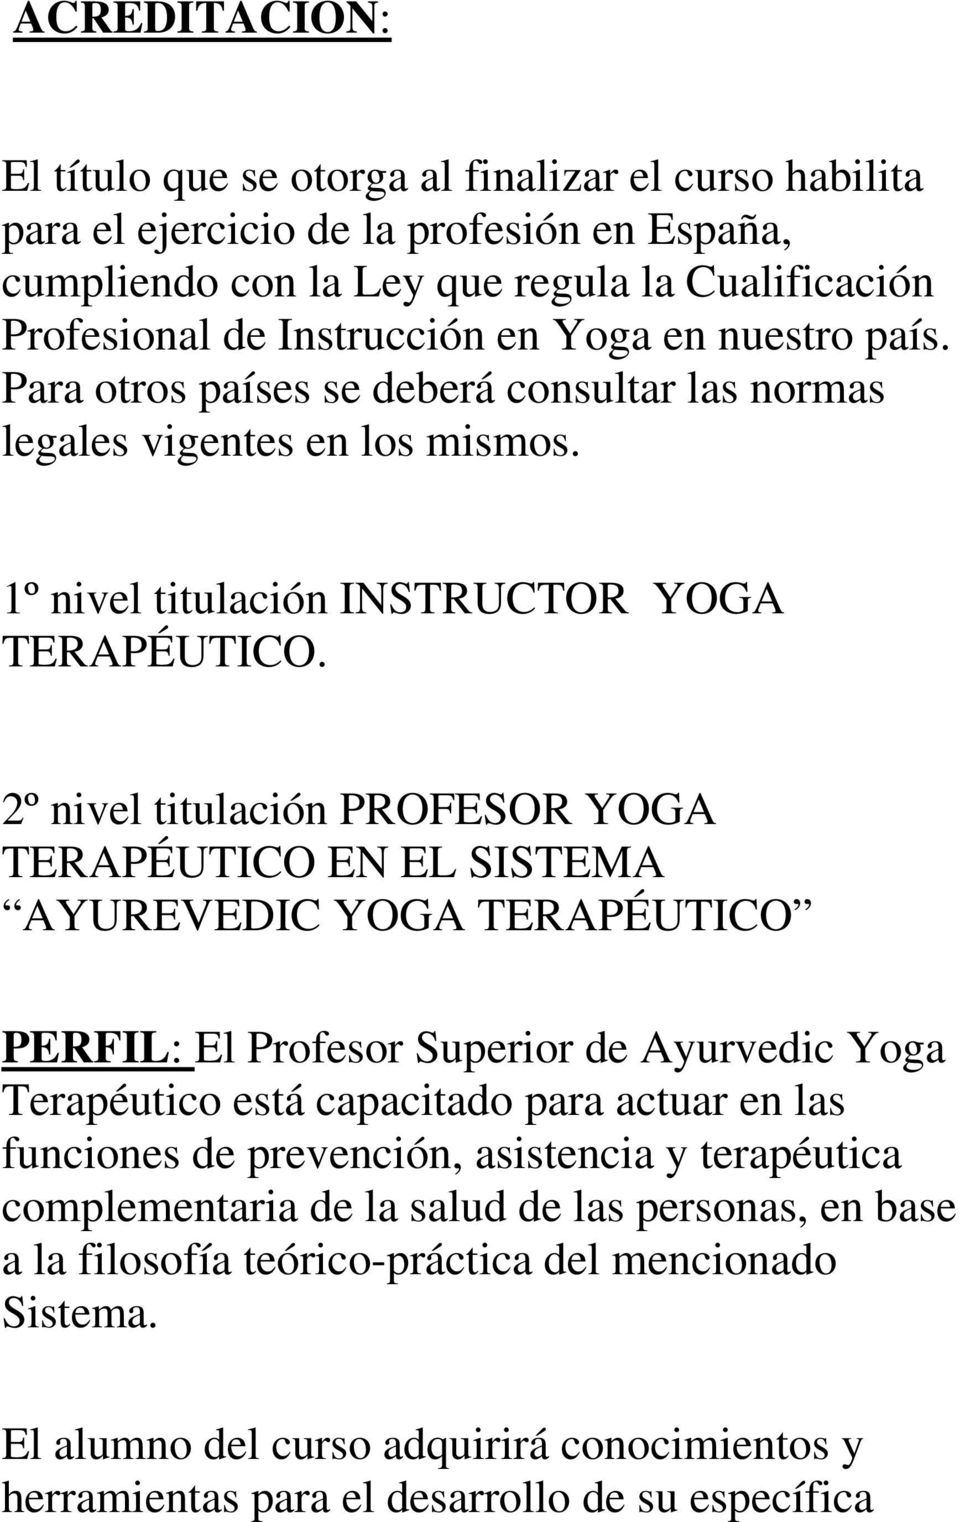 2º nivel titulación PROFESOR YOGA TERAPÉUTICO EN EL SISTEMA AYUREVEDIC YOGA TERAPÉUTICO PERFIL: El Profesor Superior de Ayurvedic Yoga Terapéutico está capacitado para actuar en las funciones de